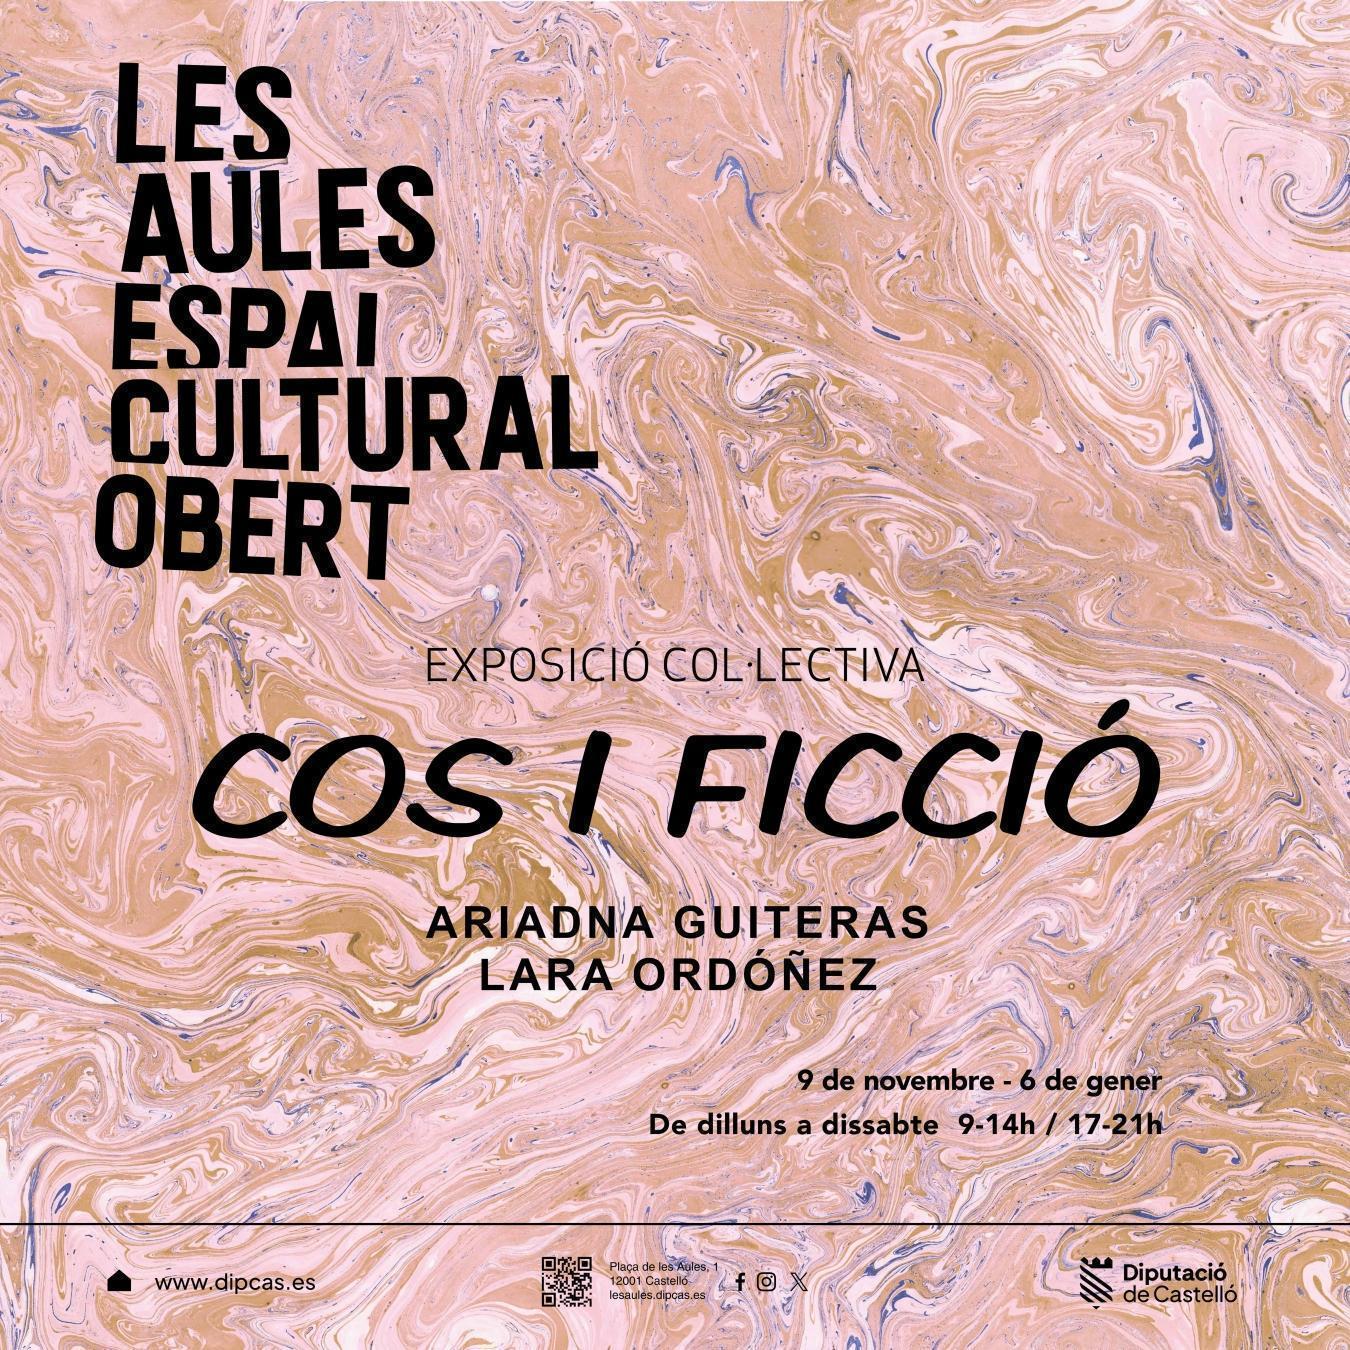 ‘Cos i ficció’ cierra el año expositivo en el Espai Cultural Obert Les Aules de la Diputación de Castellón